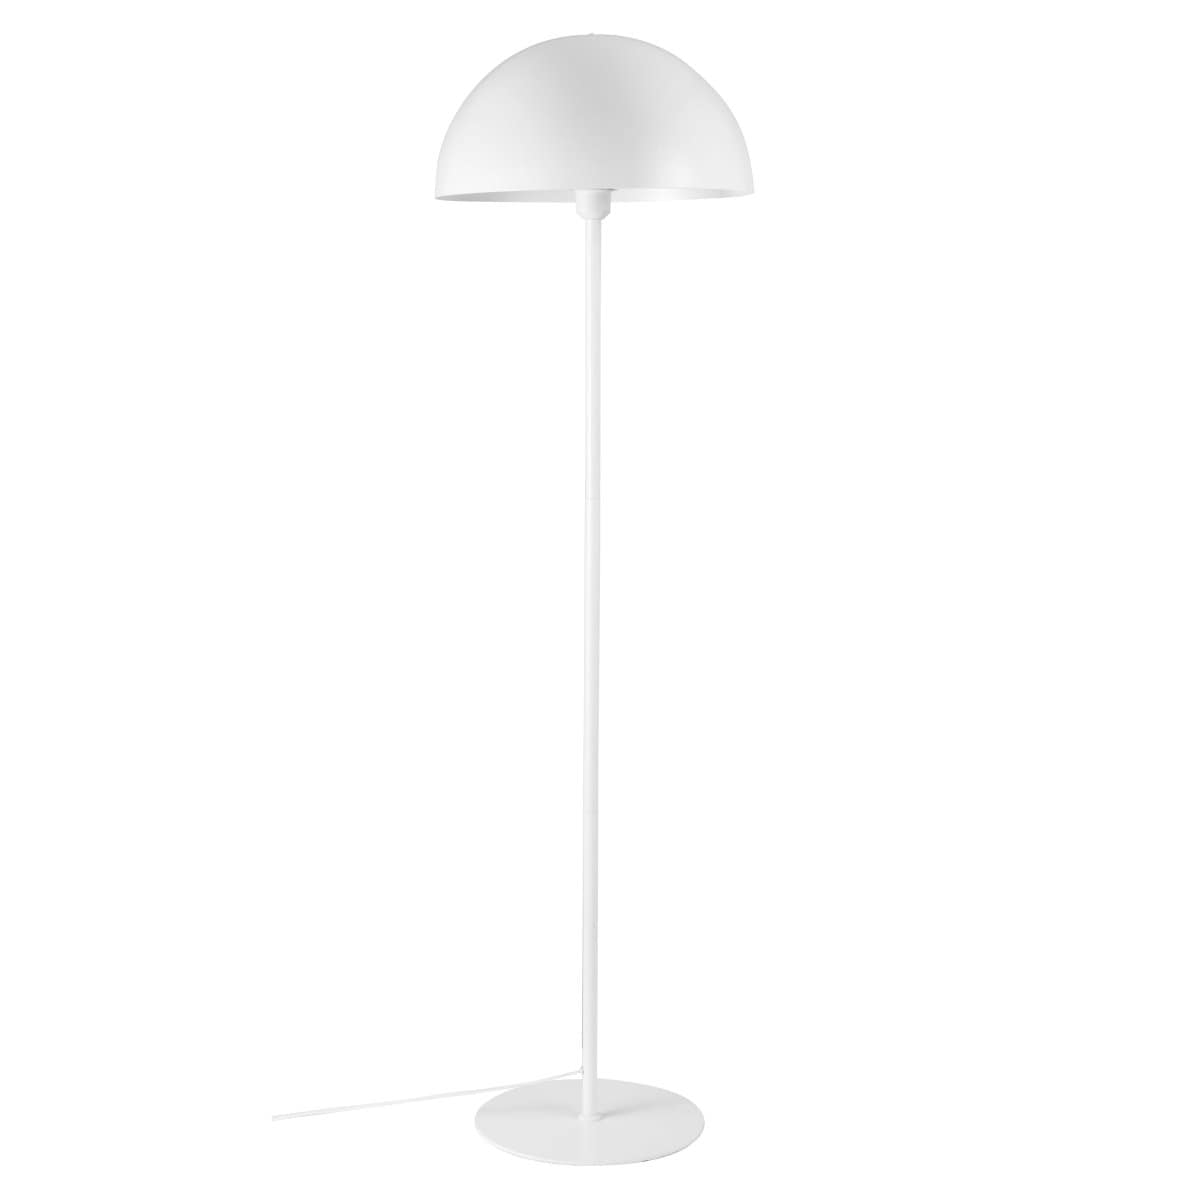 Nordlux Floor Lamp White Ellen Floor Lamp, black or white